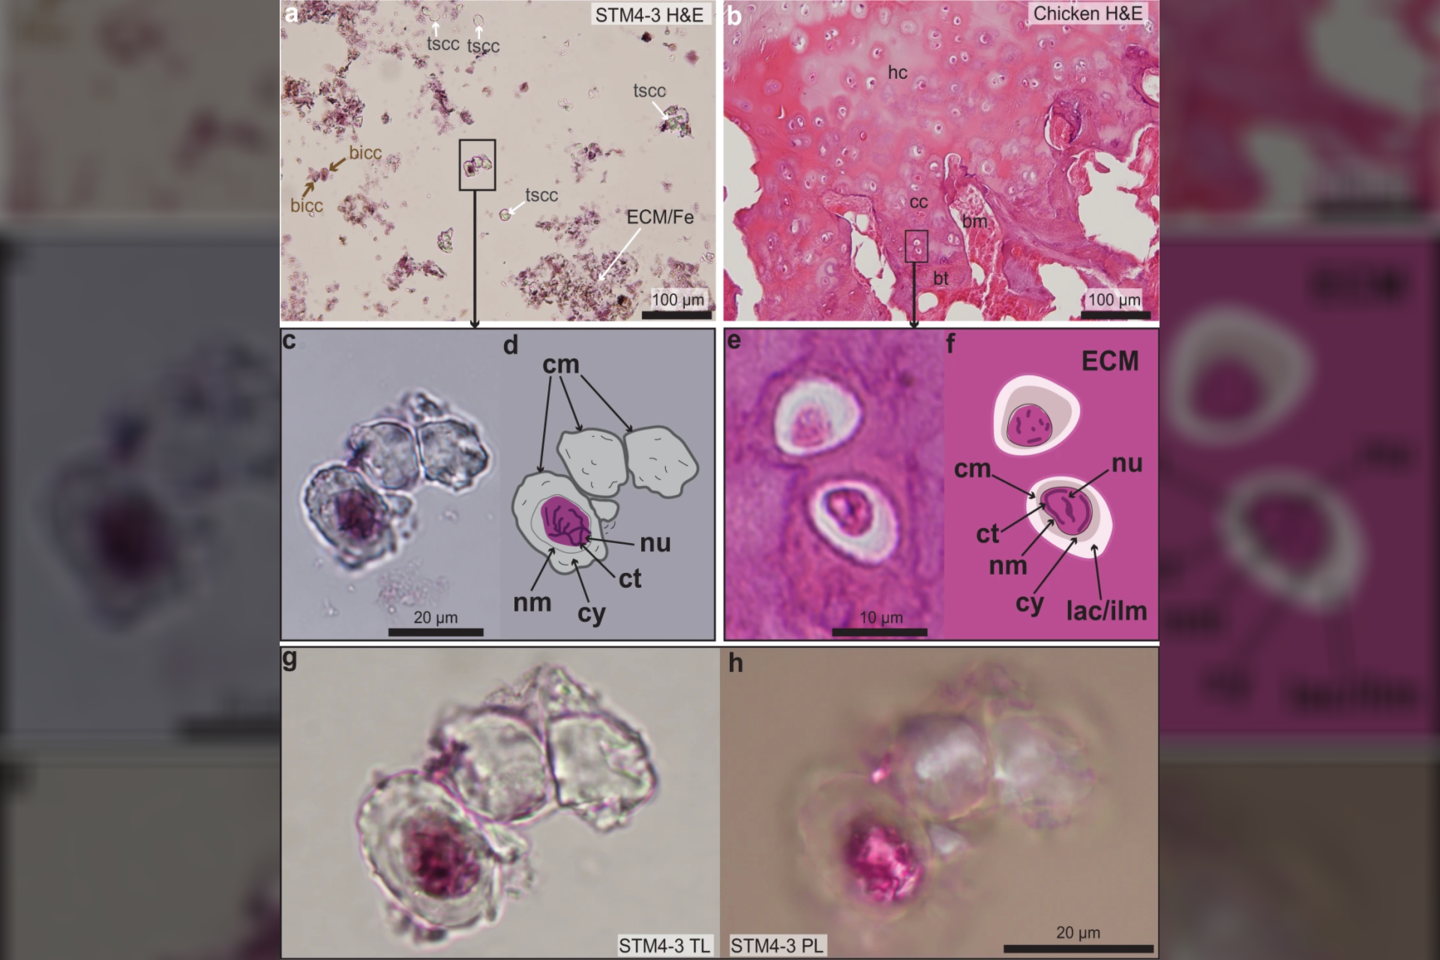  Mokslininkai palygino nudažytas Caudipteryx kremzlės pavyzdžio ląsteles (pavadintas STM4-3) su suaugusios vištos kremzlės ląstelėmis (b). Kai kuriose skaidrėse ląstelės nudažytos, kai kurios rodomos išspinduliuojamoje šviesoje (angl. transmitted light, TL) arba poliarizuotoje šviesoje (PL).<br> Zheng ir kt. / Communications Biology iliustr.